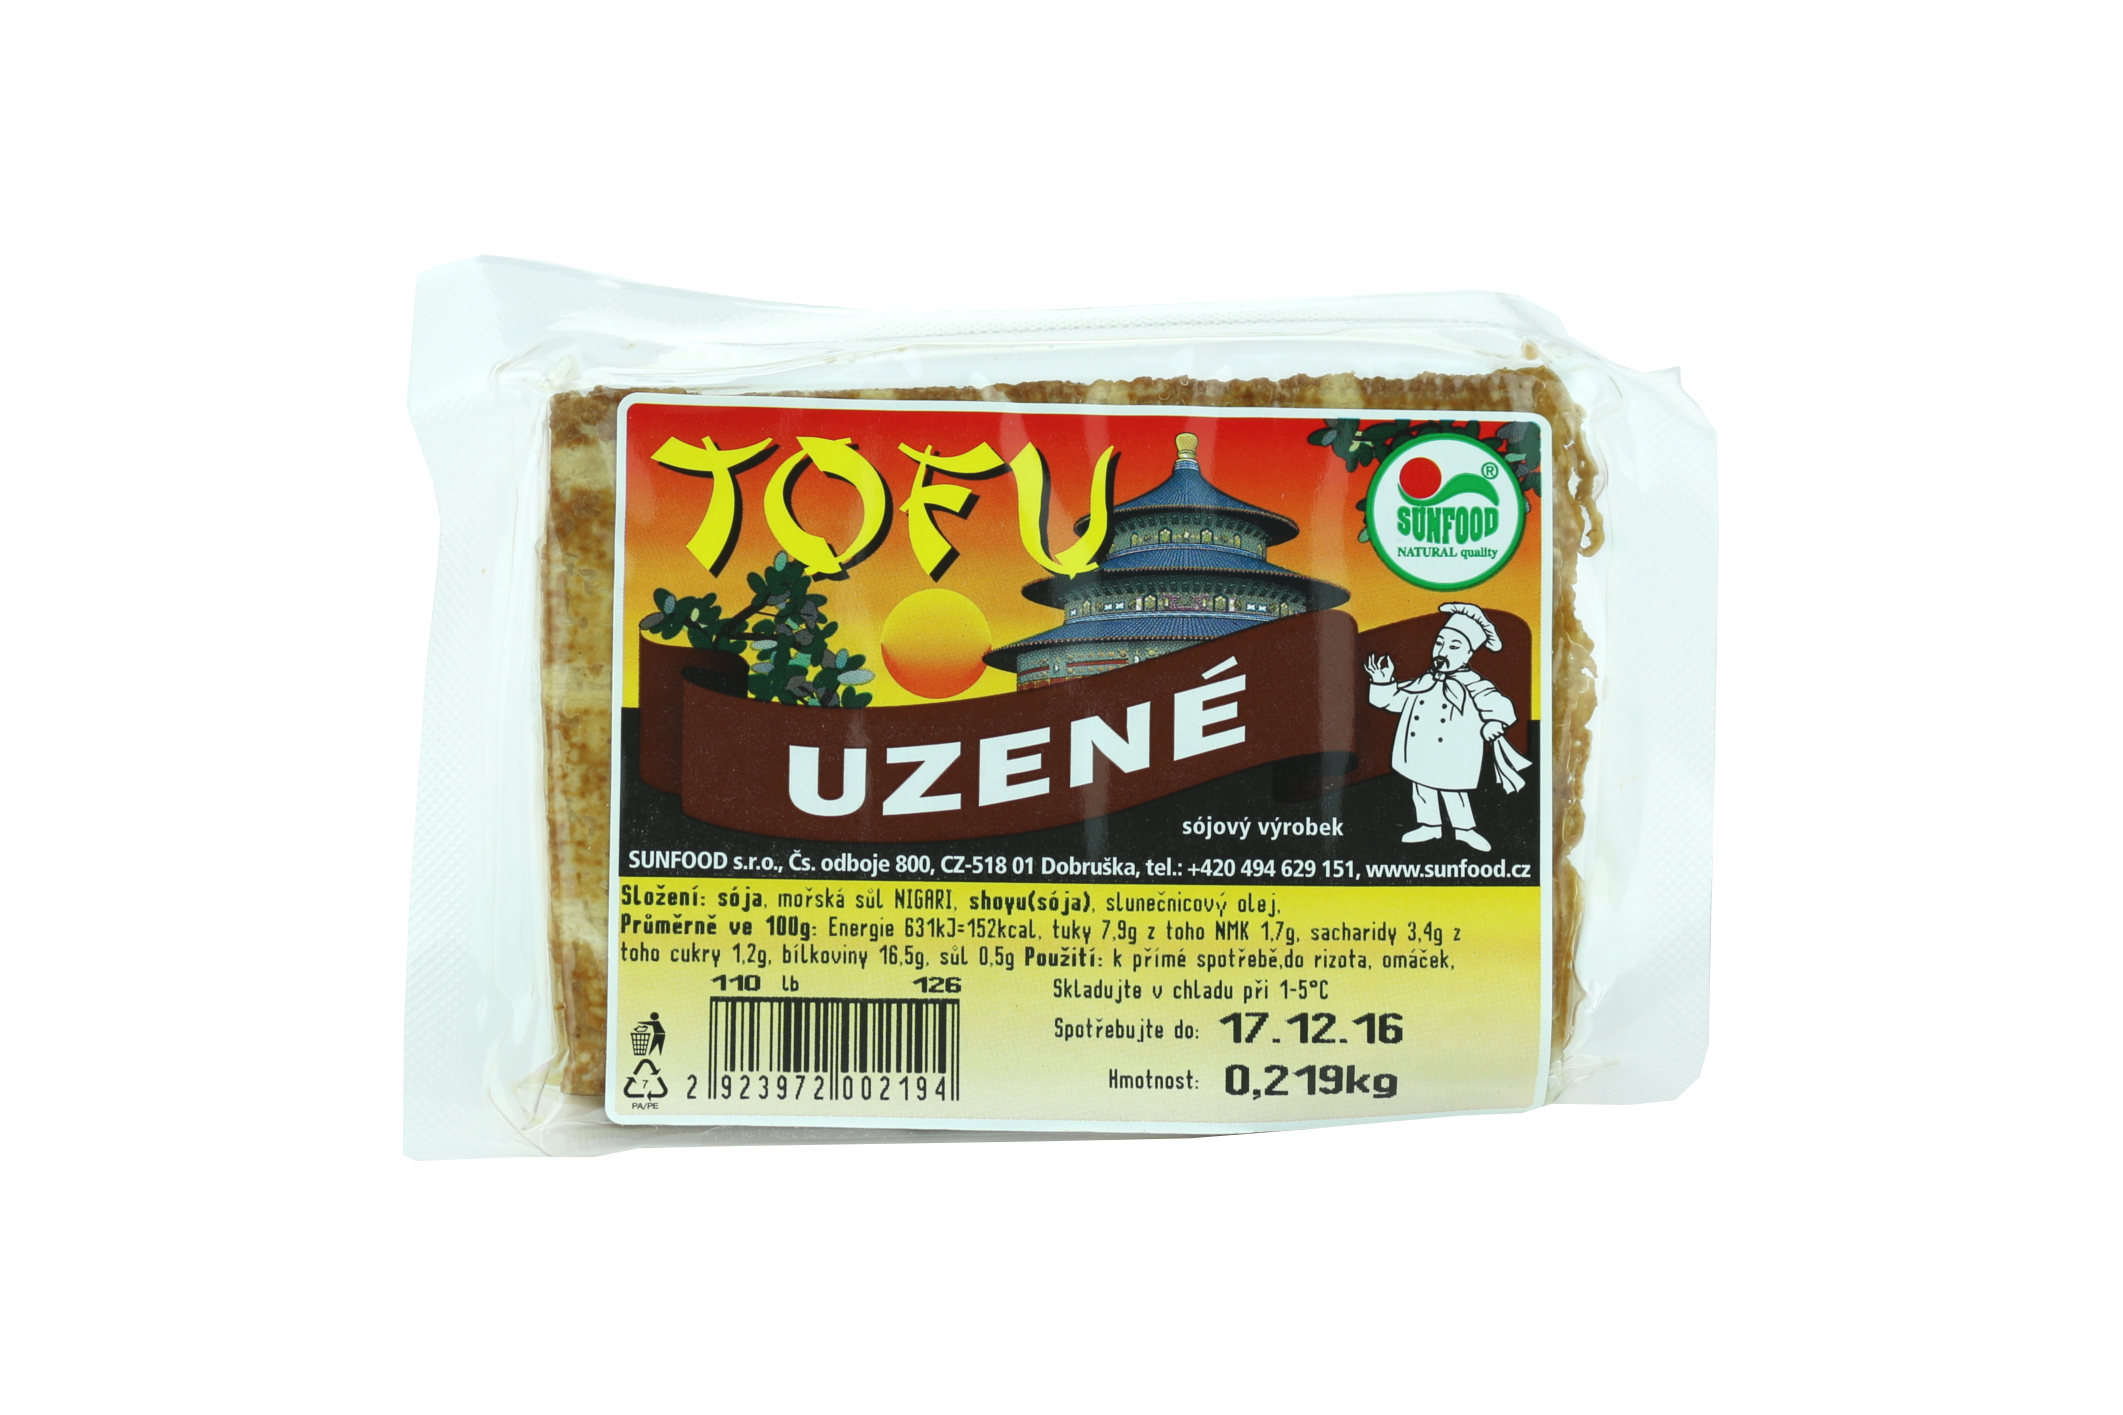 Tofu uzené 0,7 Kg - pouze rozvoz vybraná města nebo osobní odběr